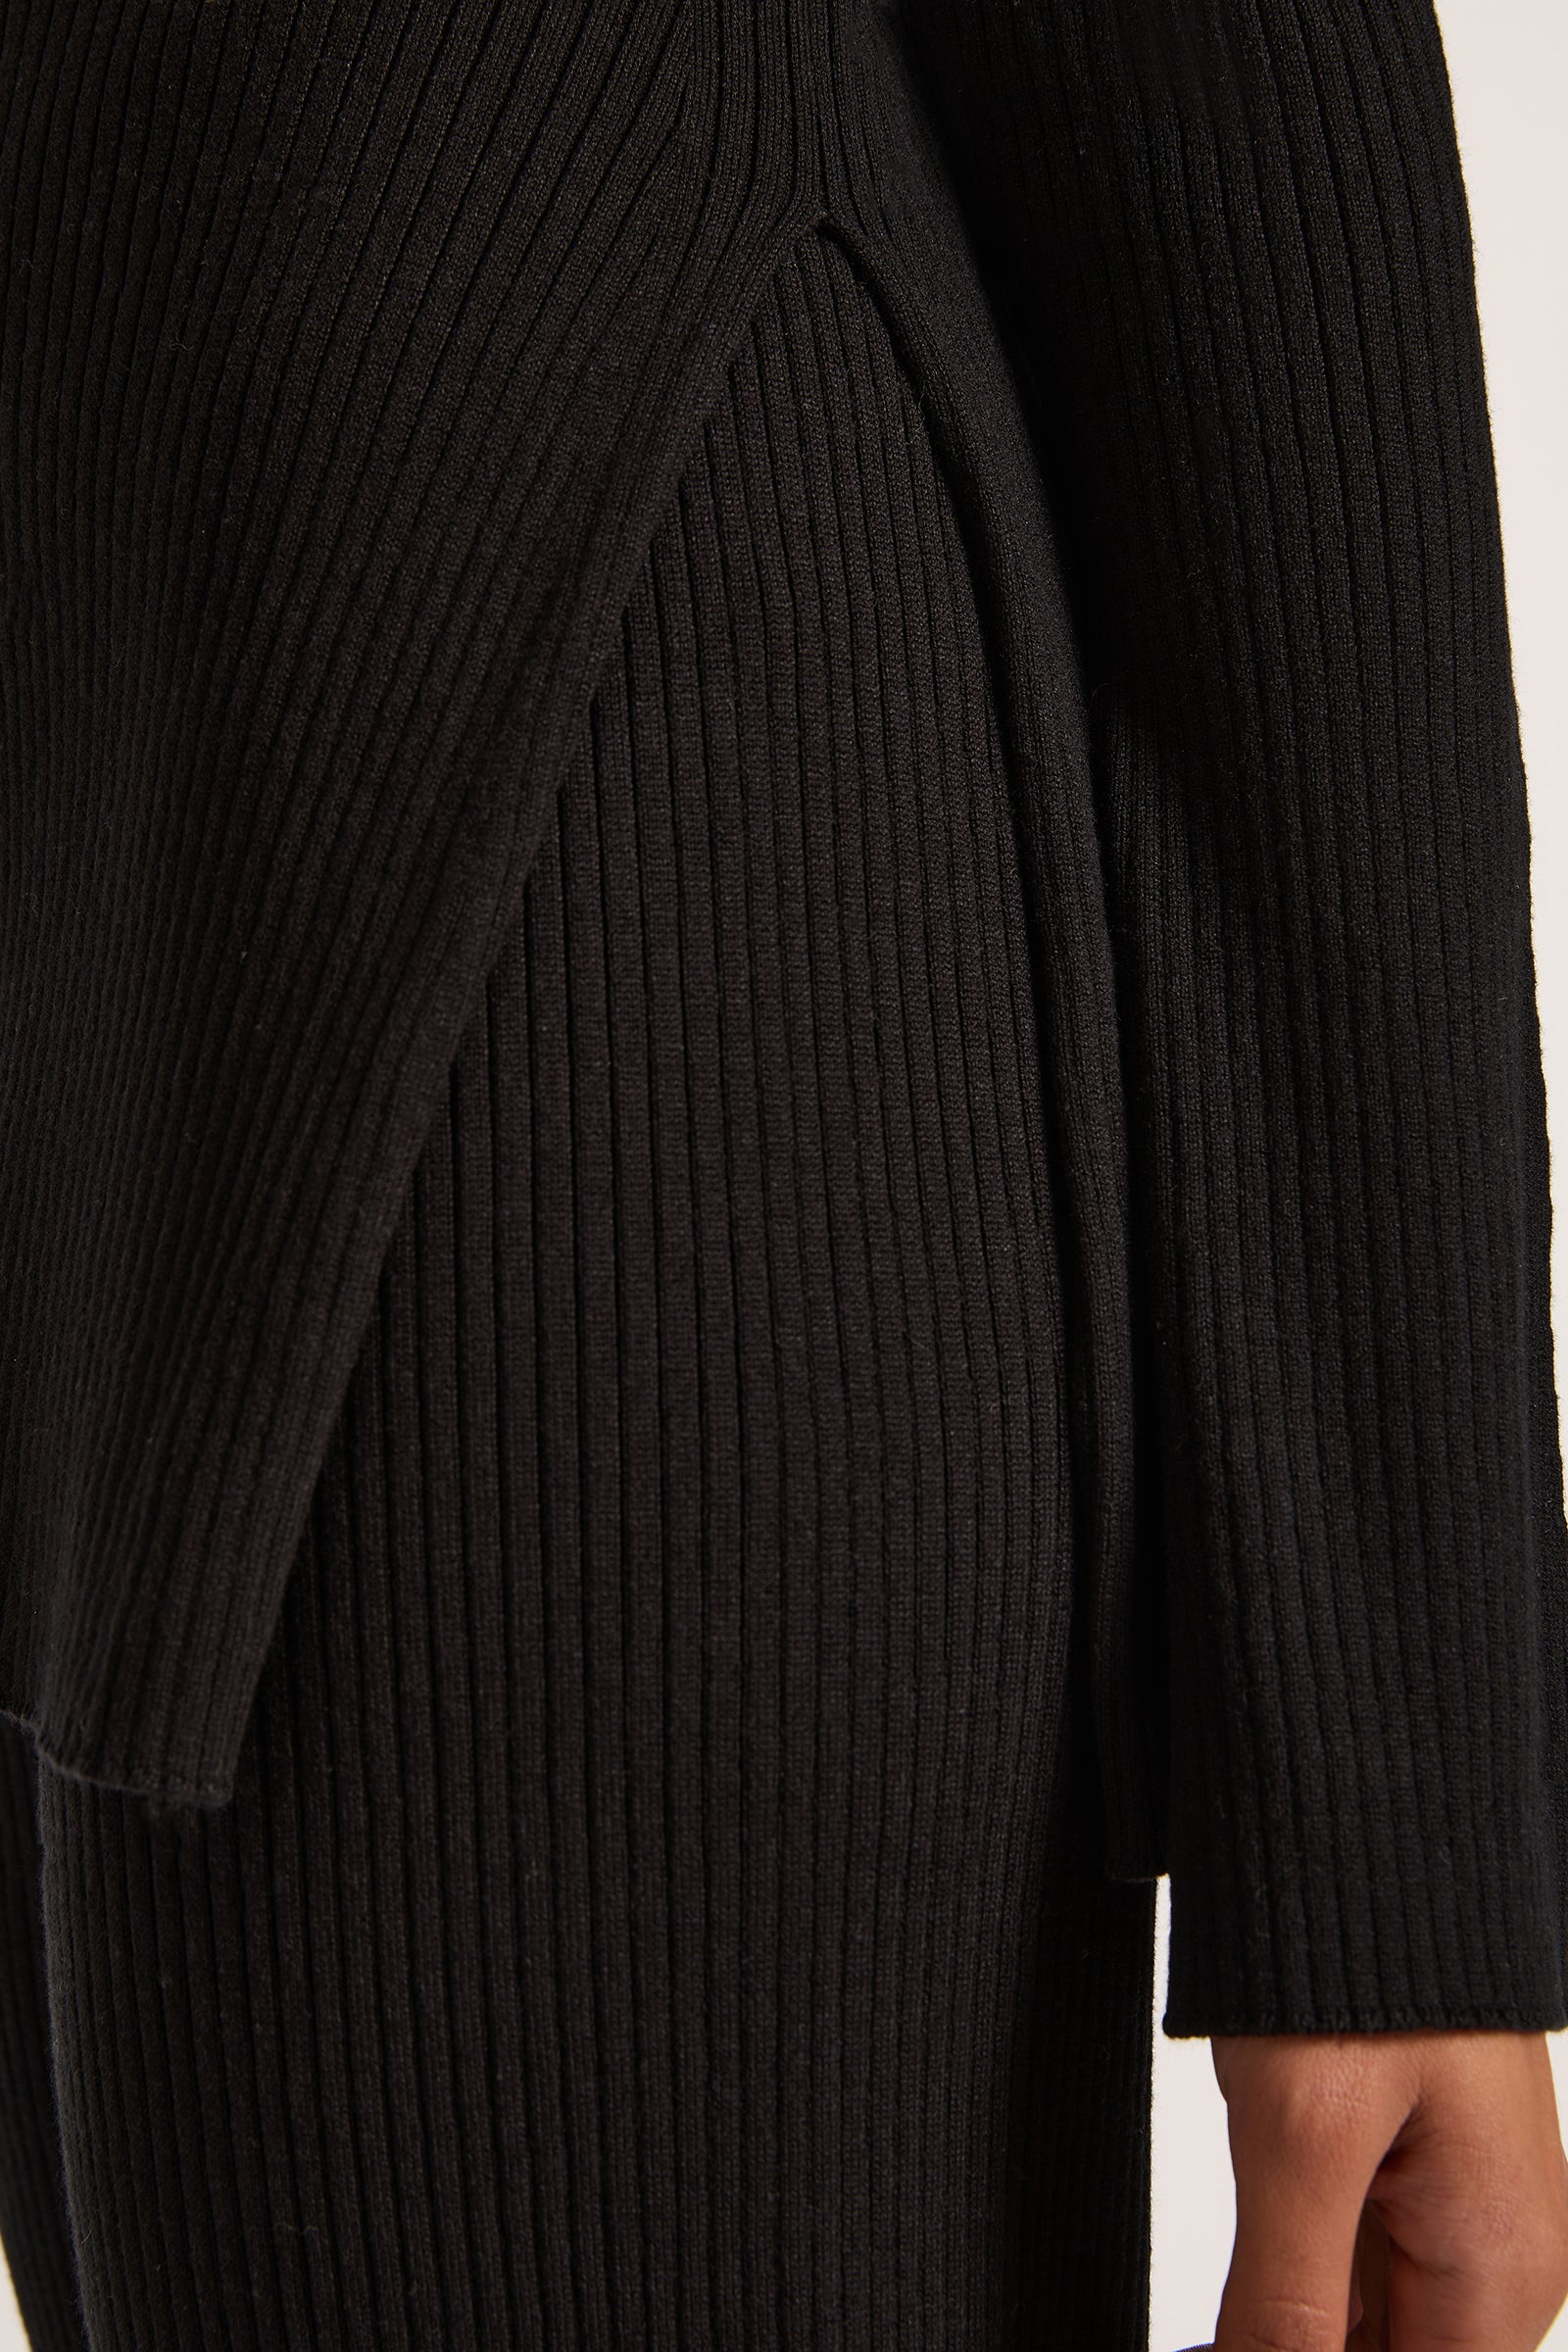 Malo Knit Tunic Black 